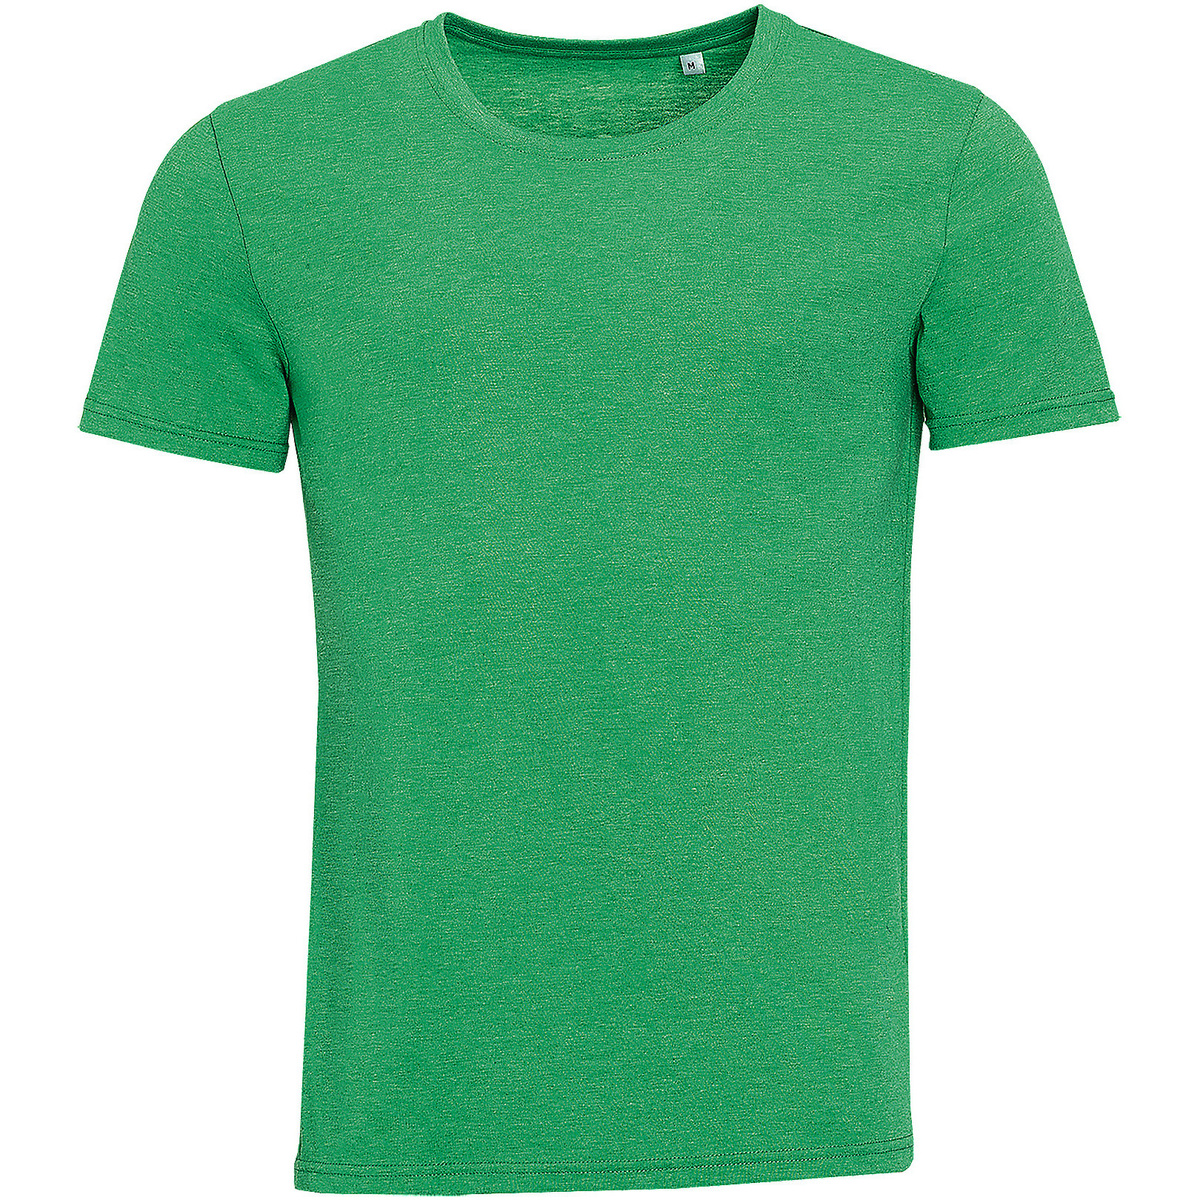 Vêtements Homme Tee Shirt Slub D 01182 Vert